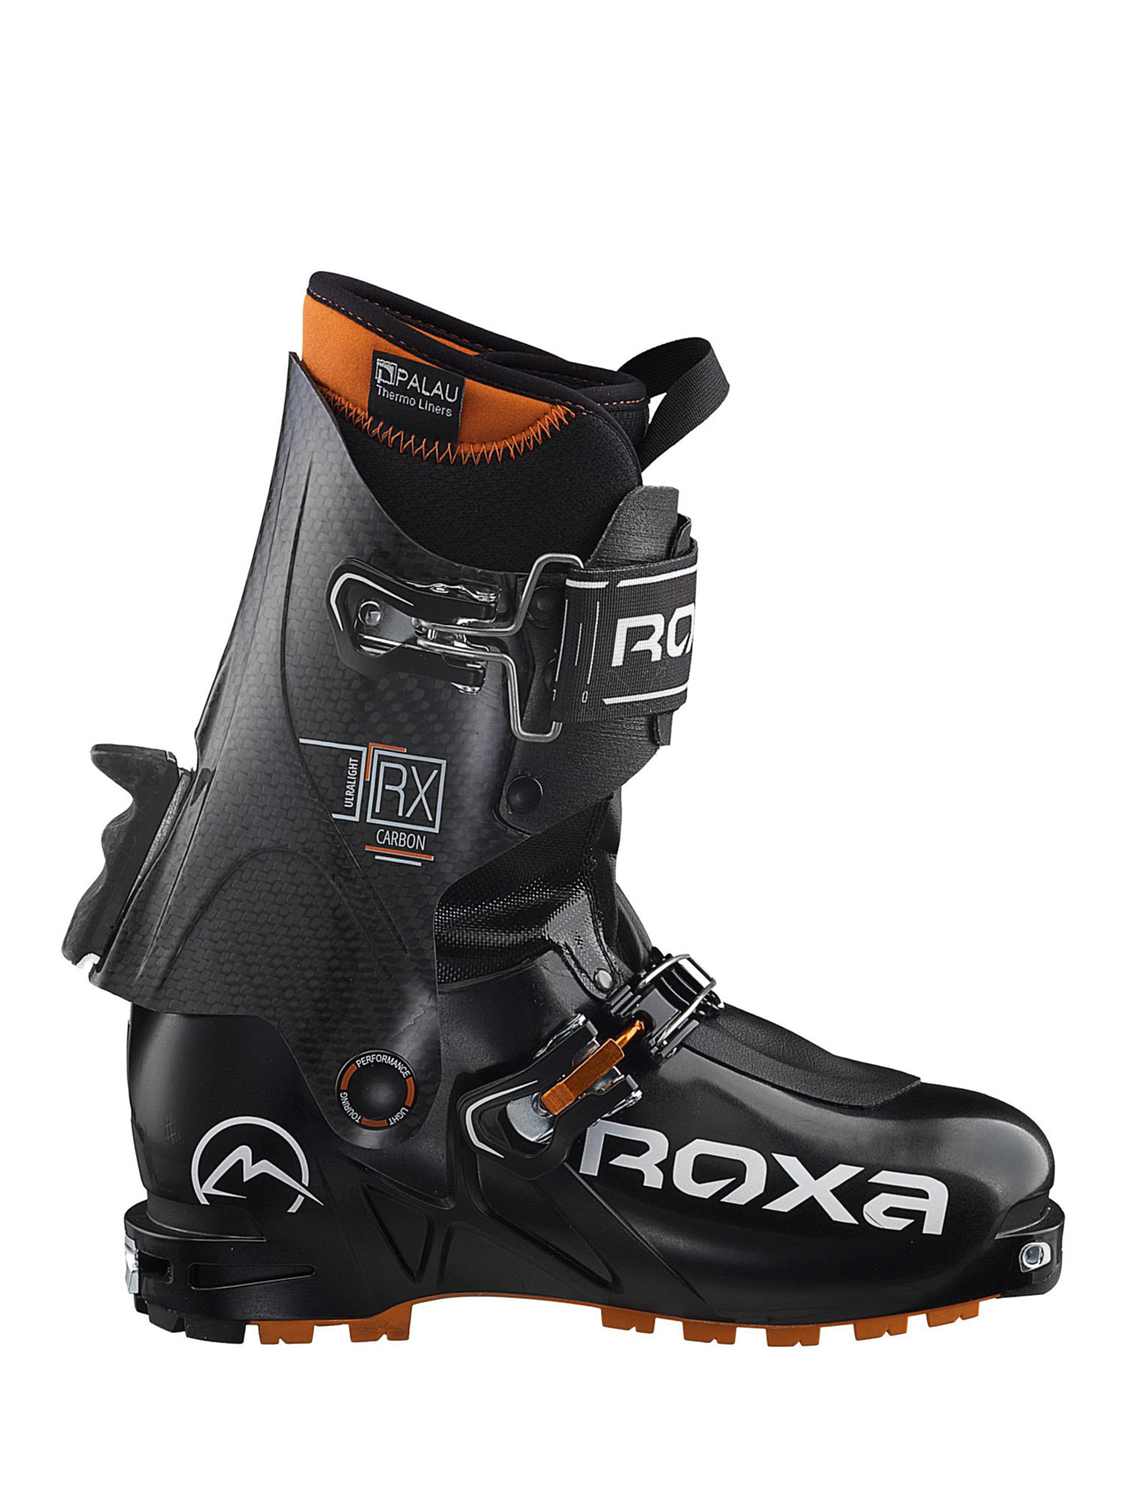 Горнолыжные ботинки ROXA RX CARBON Black